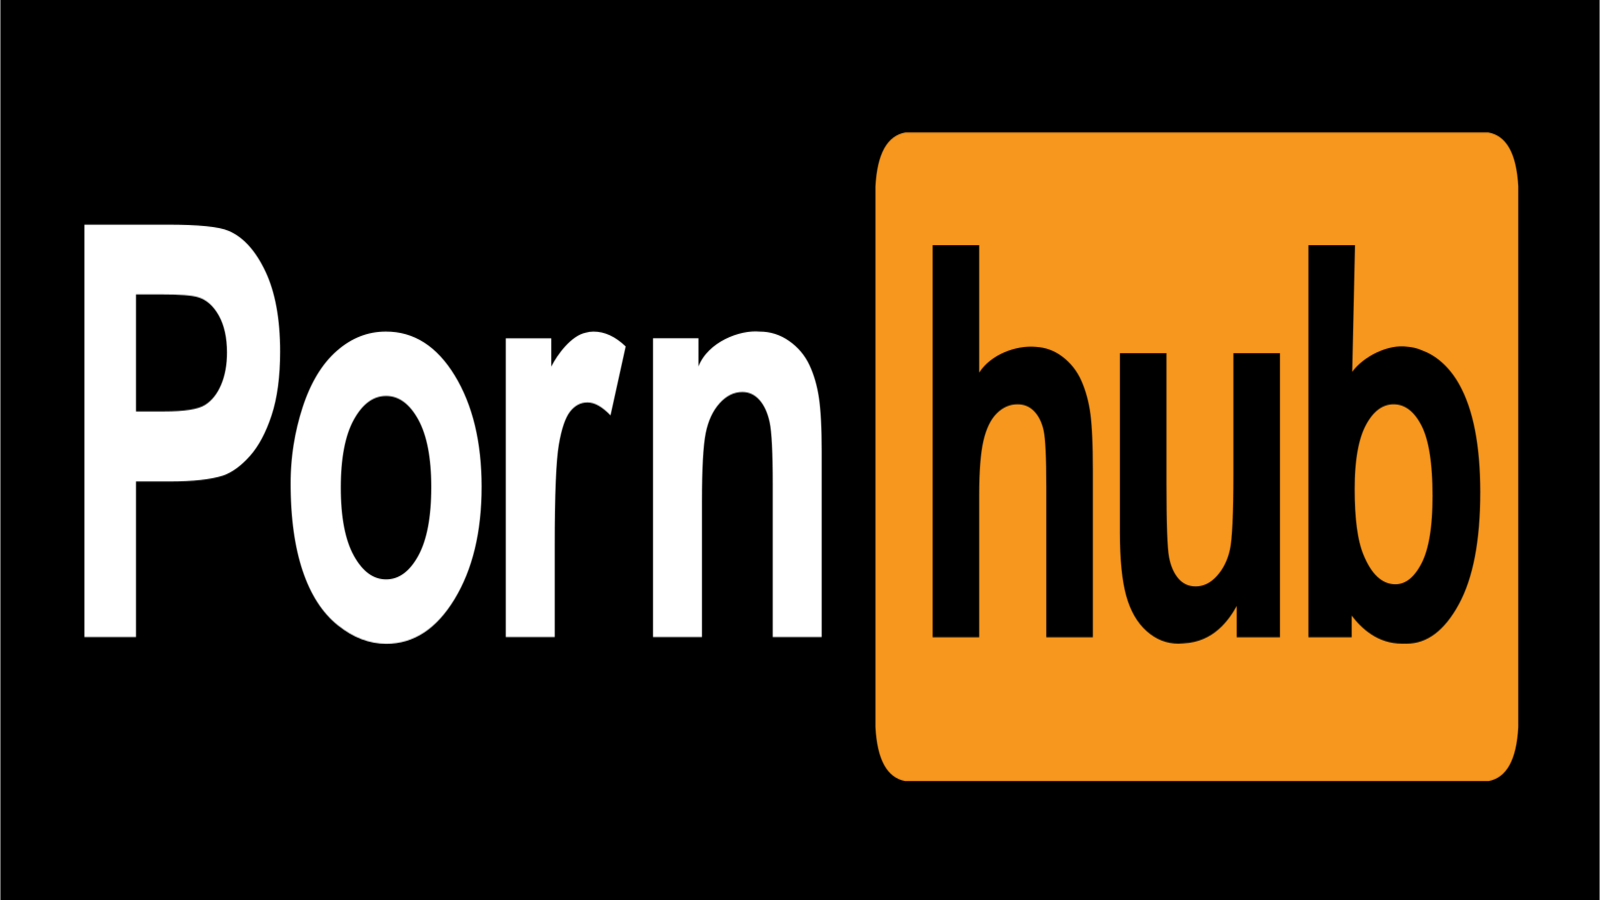 pornhub logosu
